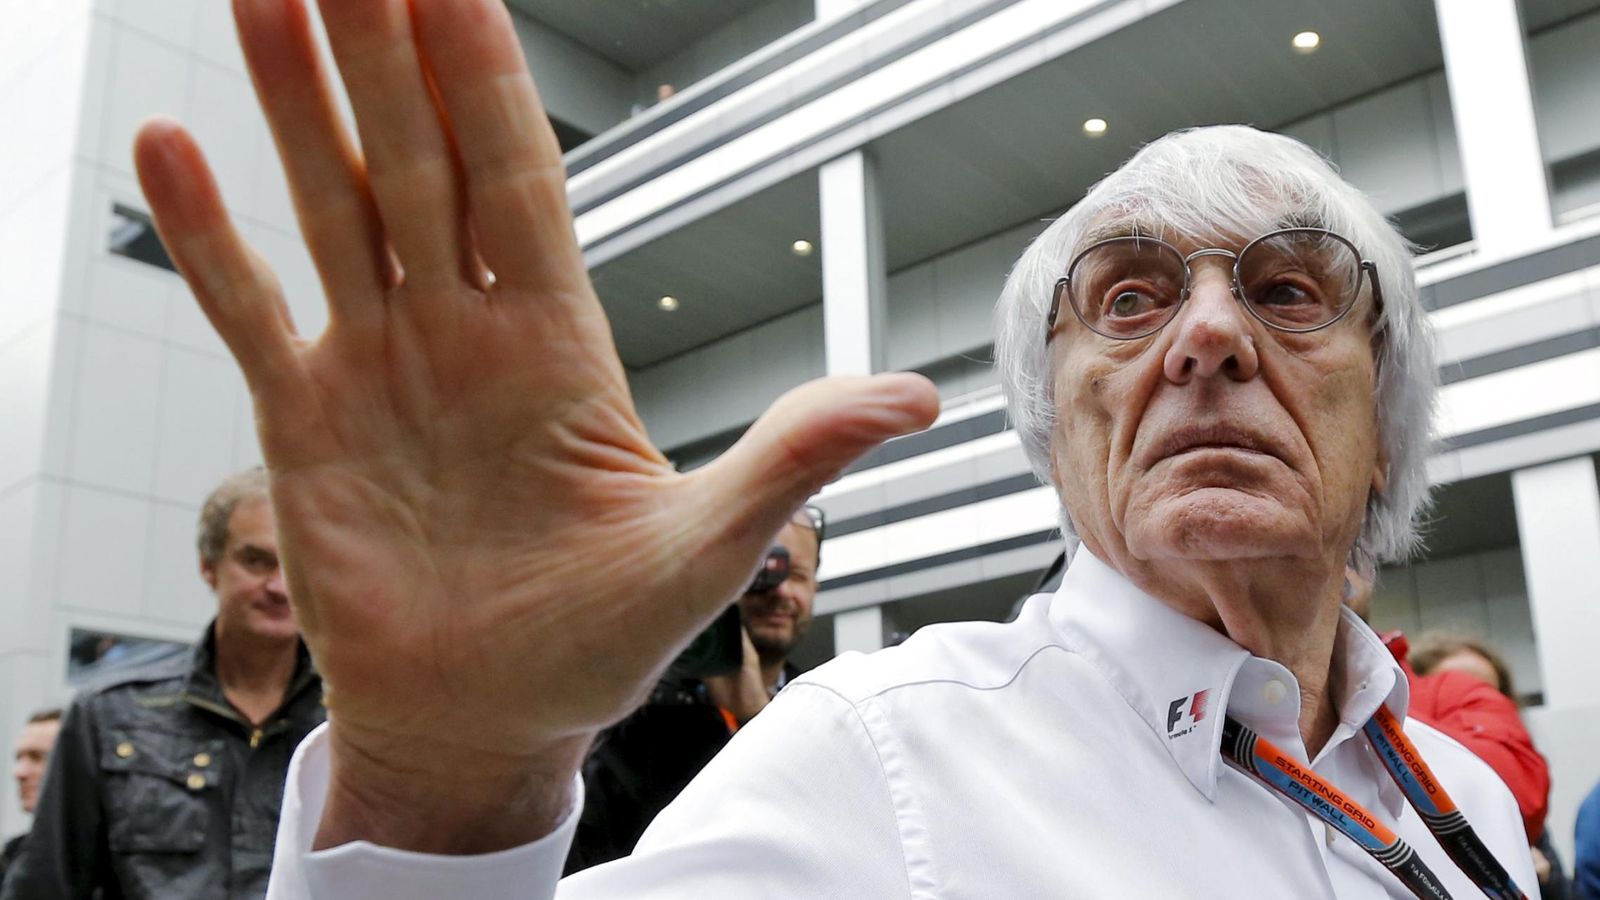 Foto: El presidente de la Fórmula Uno Bernie Ecclestone, durante el Gran Premio de Rusia. (Reuters)